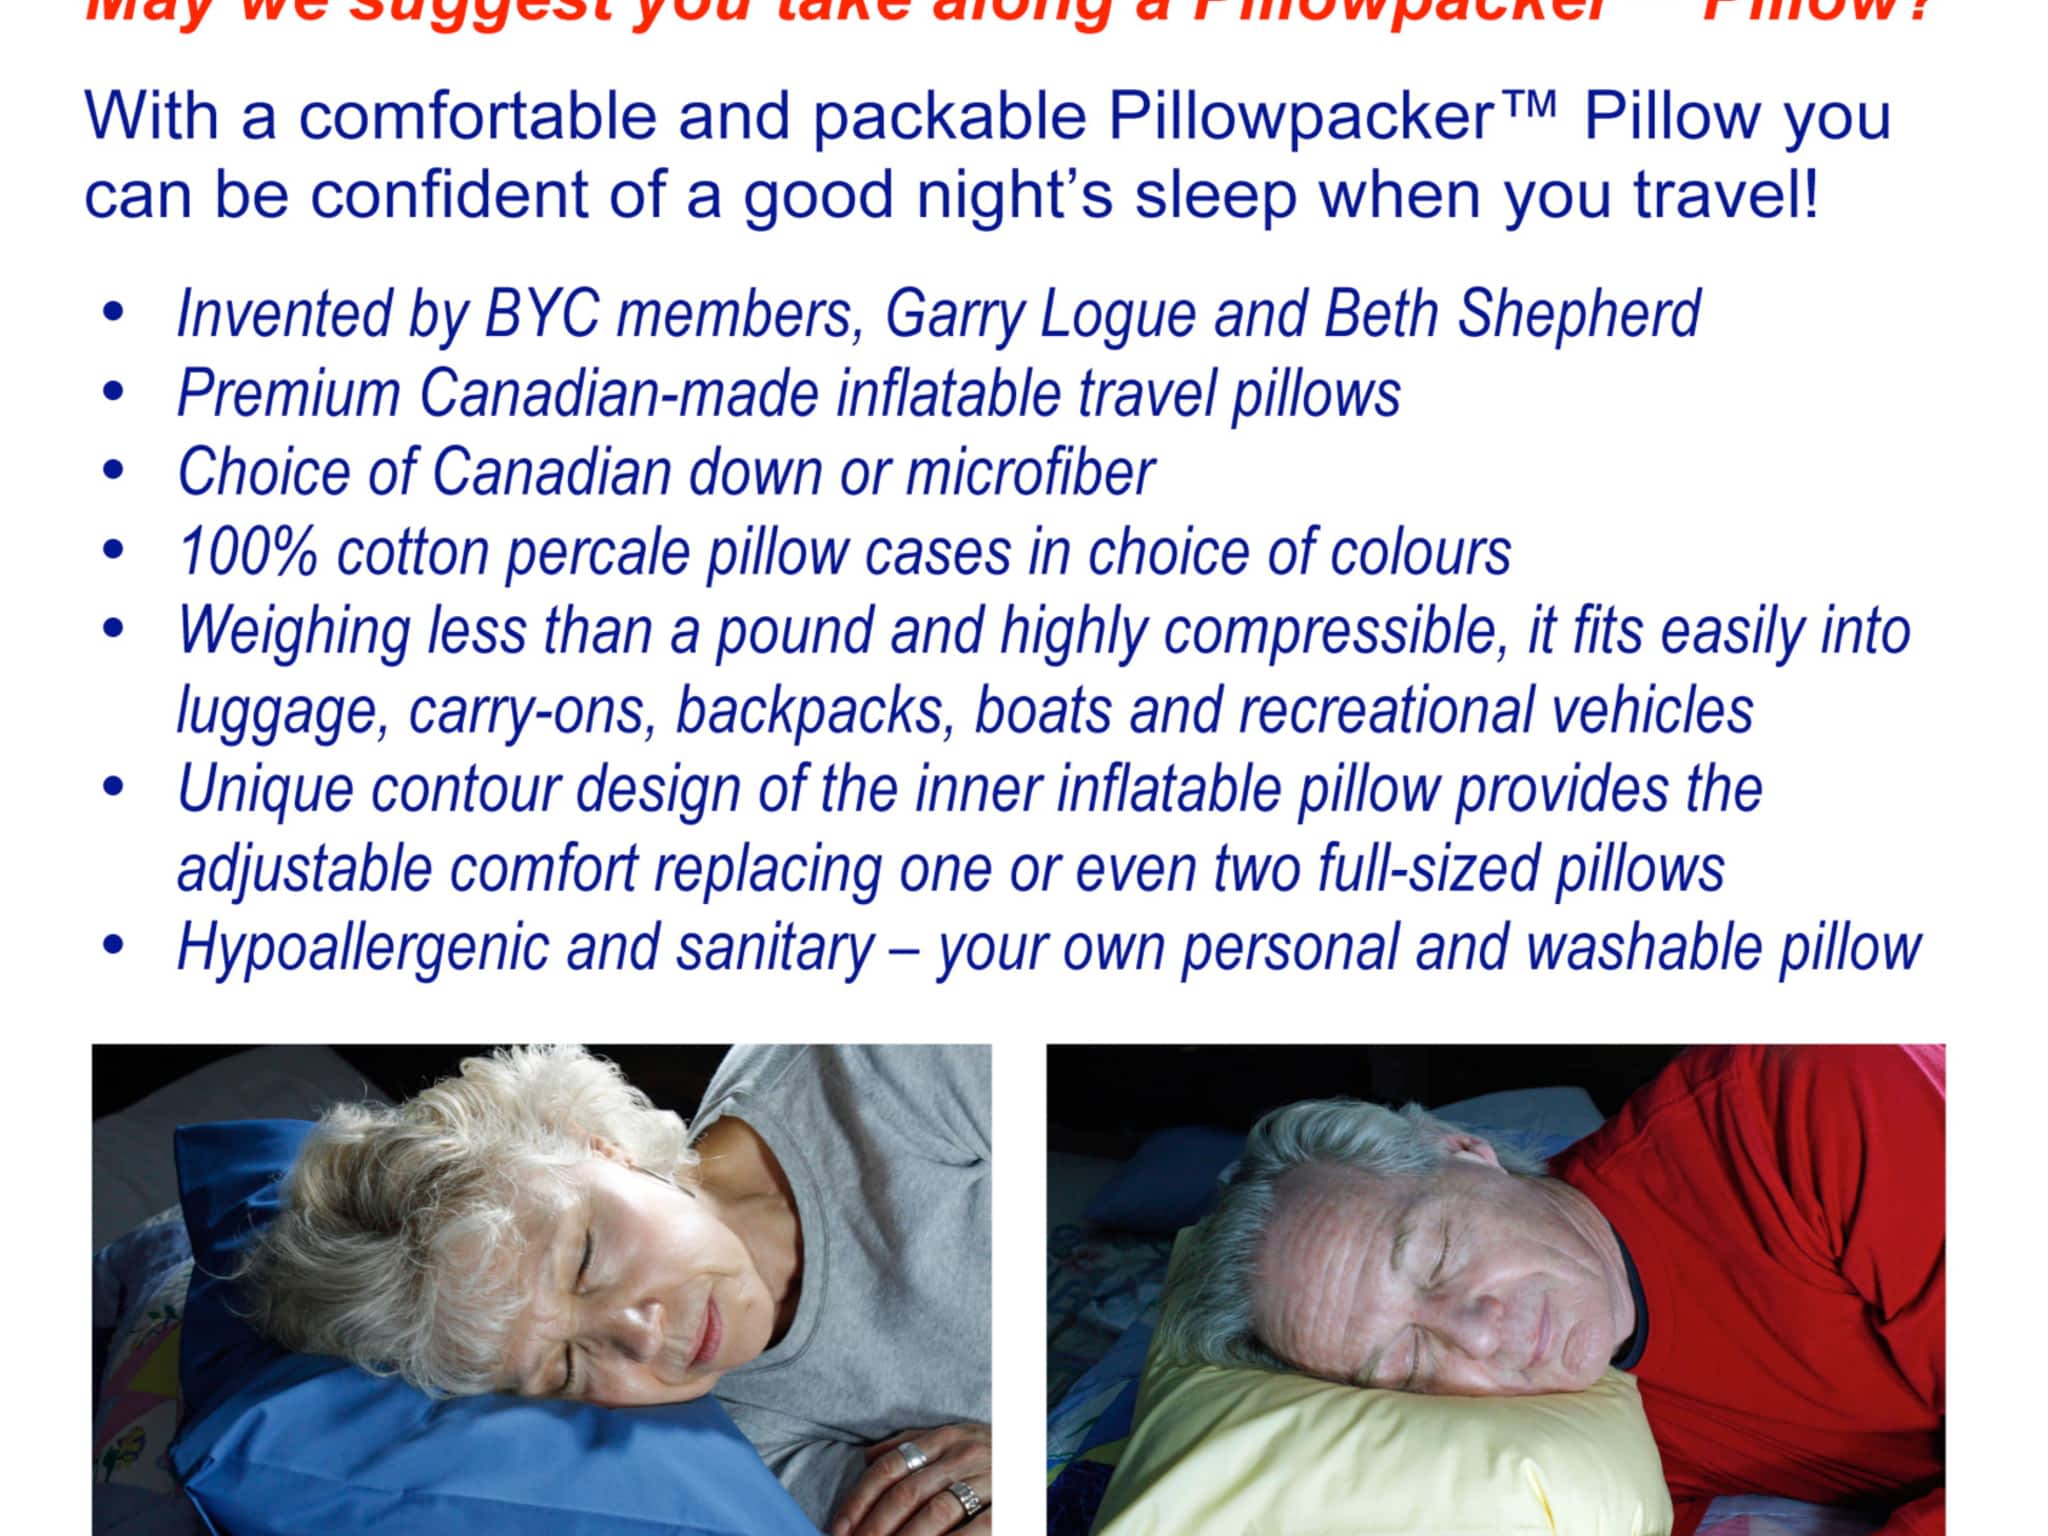 photo Pillowpacker Pillows